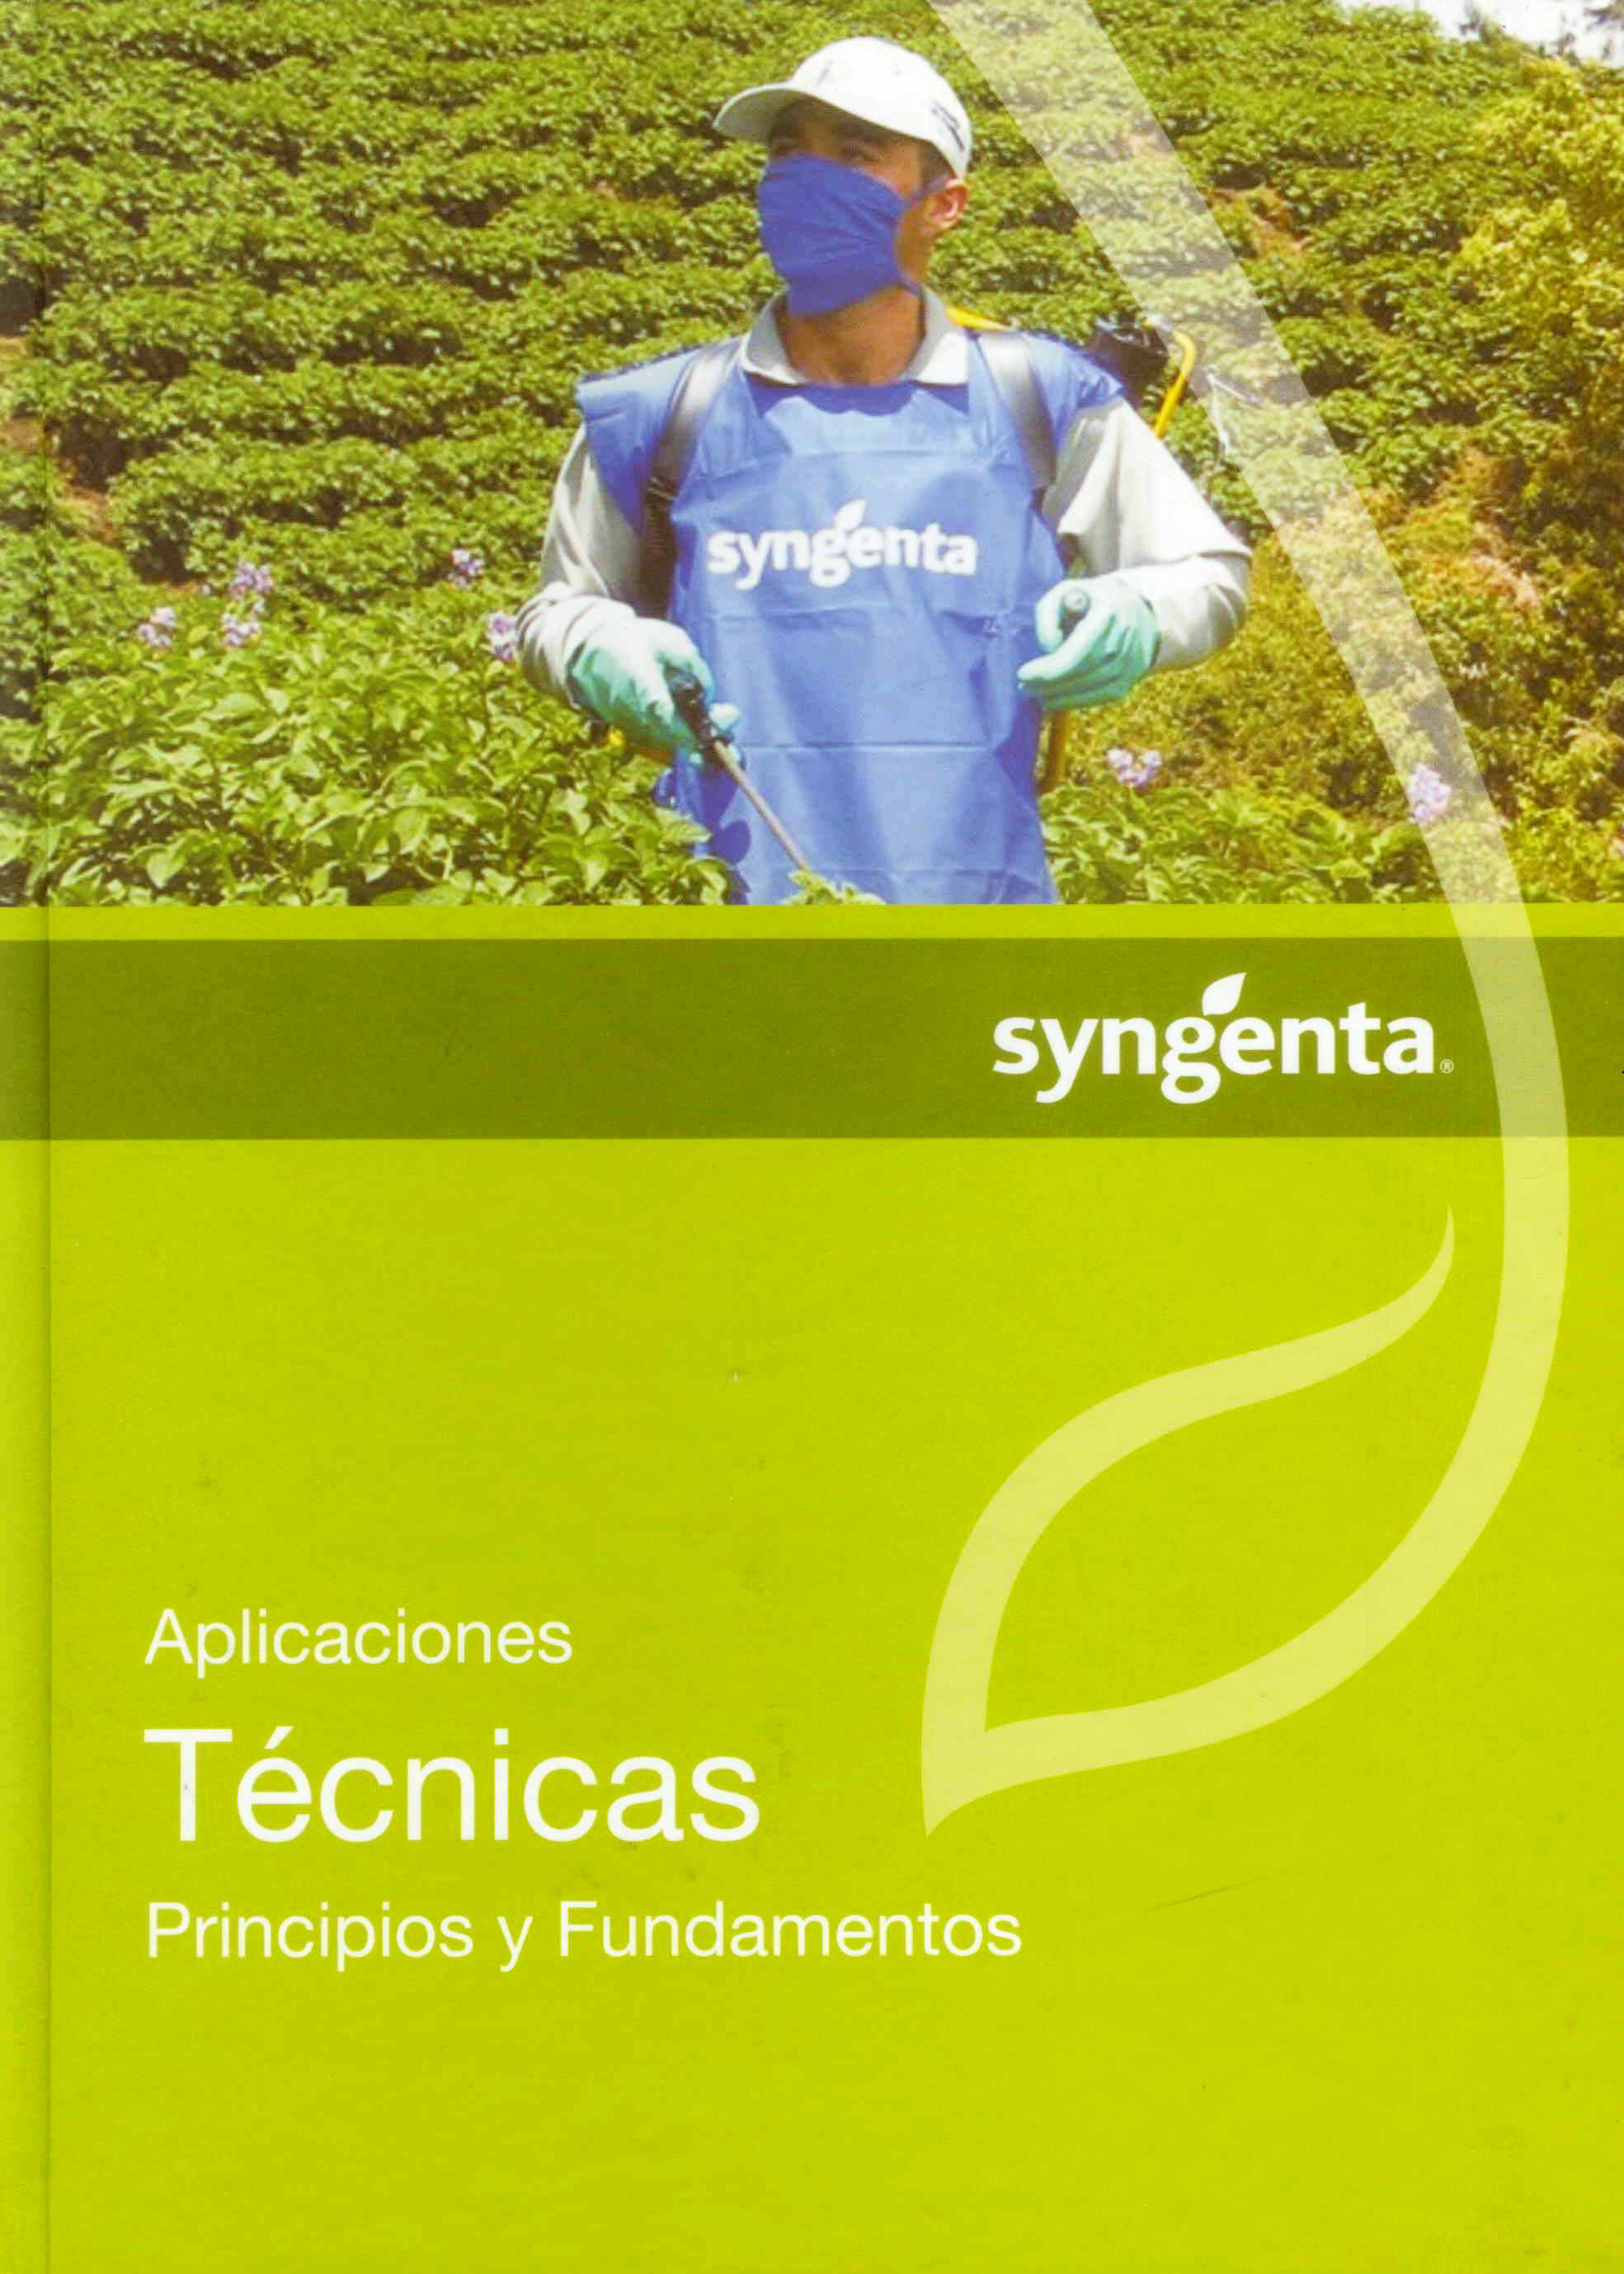 http://www.cenicana.org/investigacion/seica/imagenes_libros/2012/nov_2012/singenta.jpg